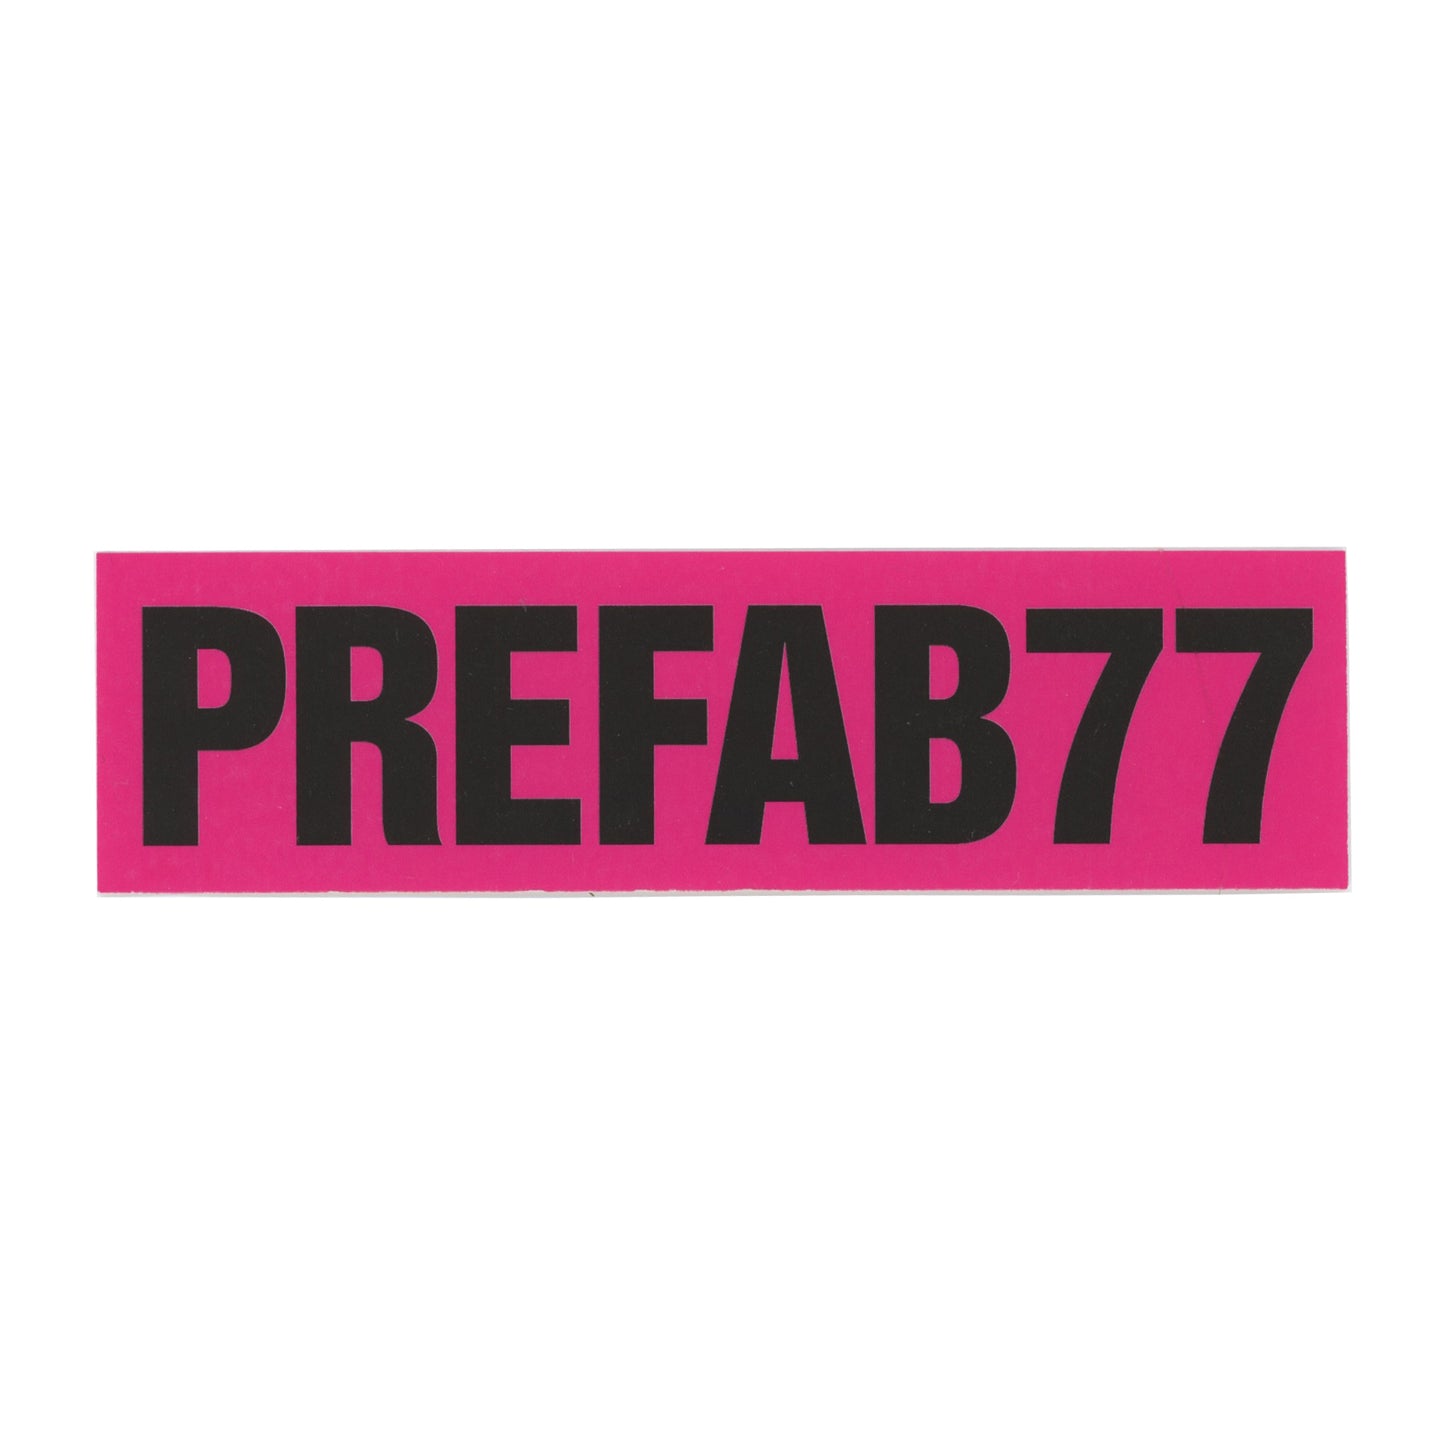 PREFAB77 Black Pink Sticker